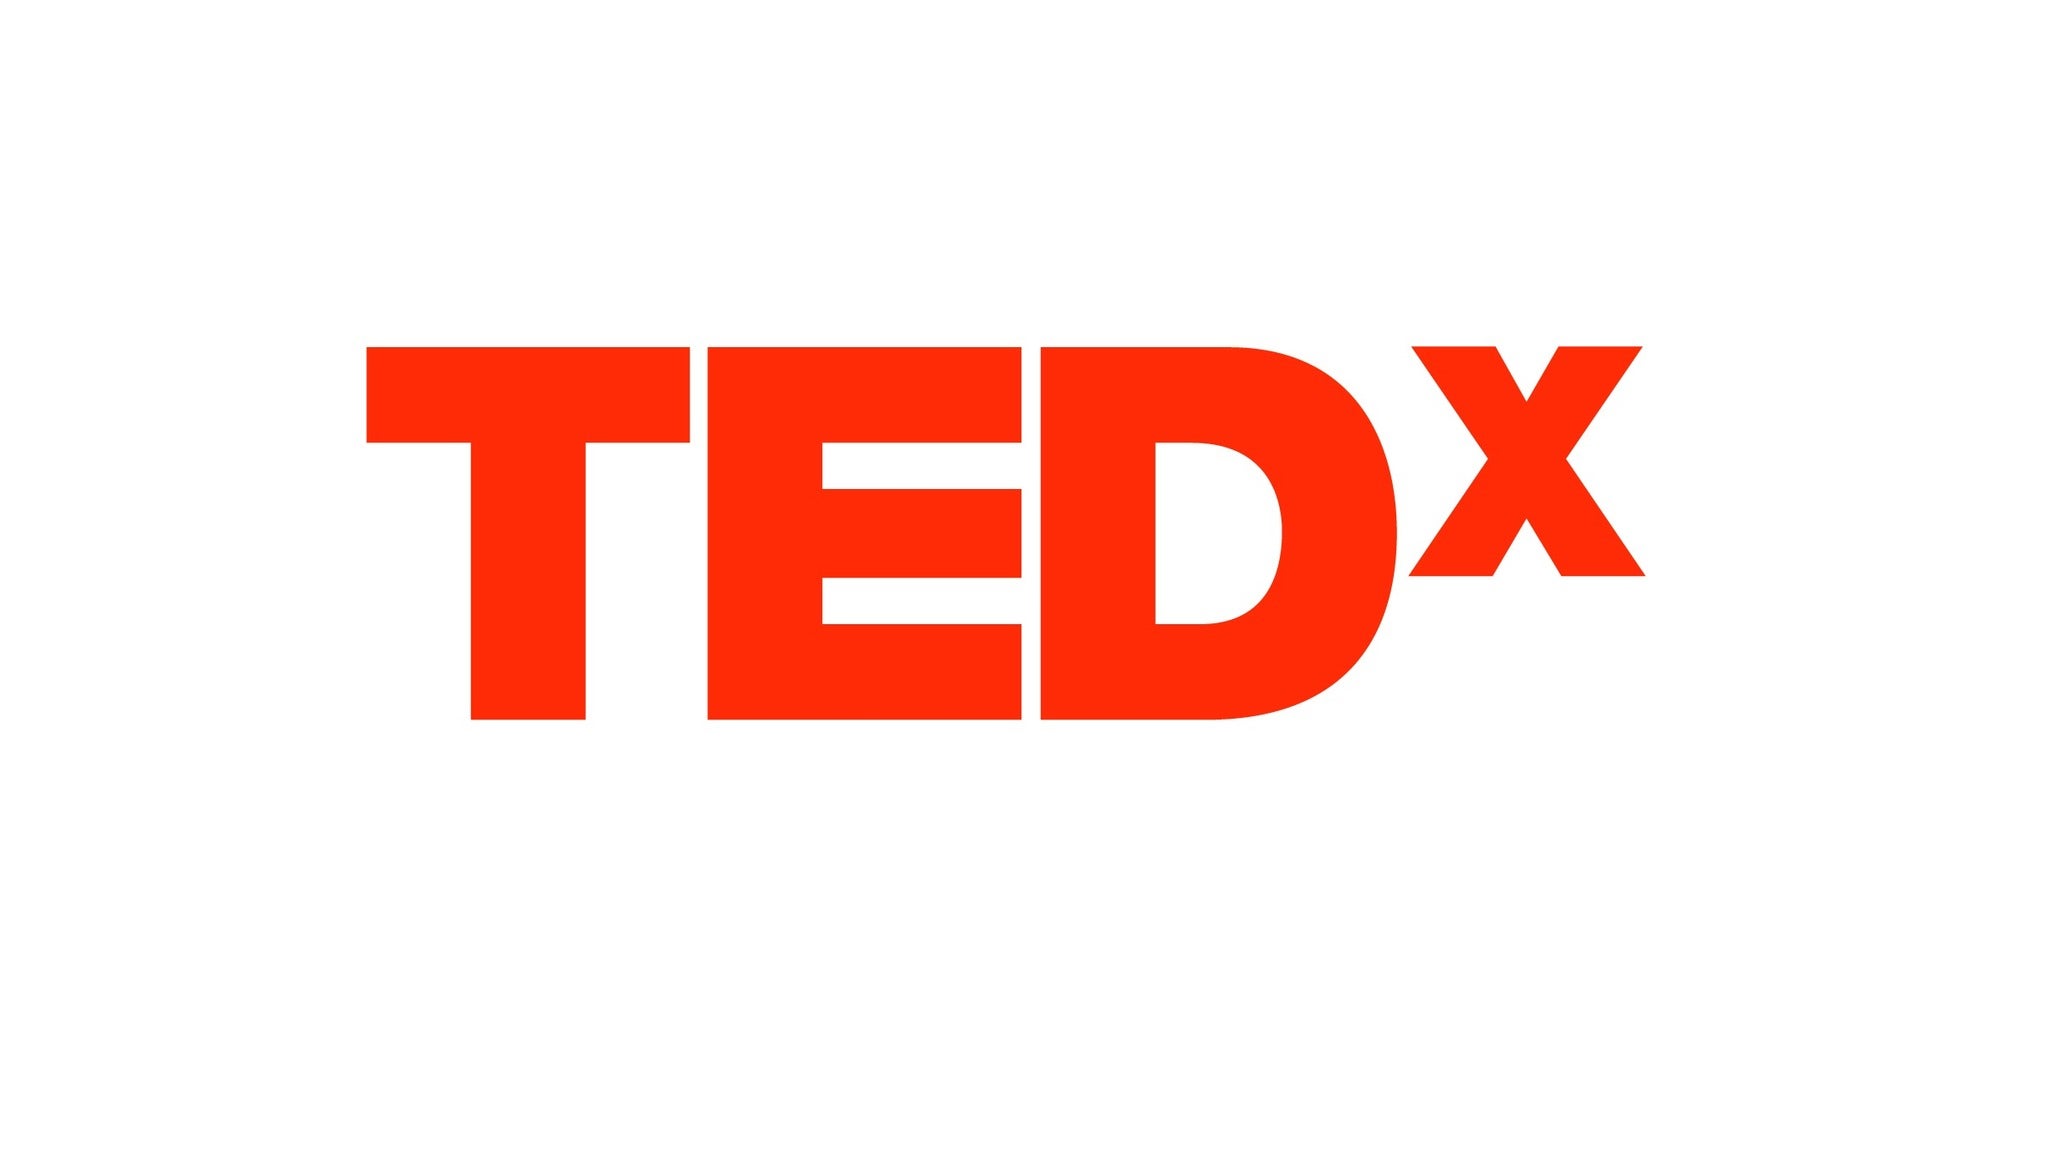 TEDxCambridge in Boston promo photo for $10 Off Discount presale offer code